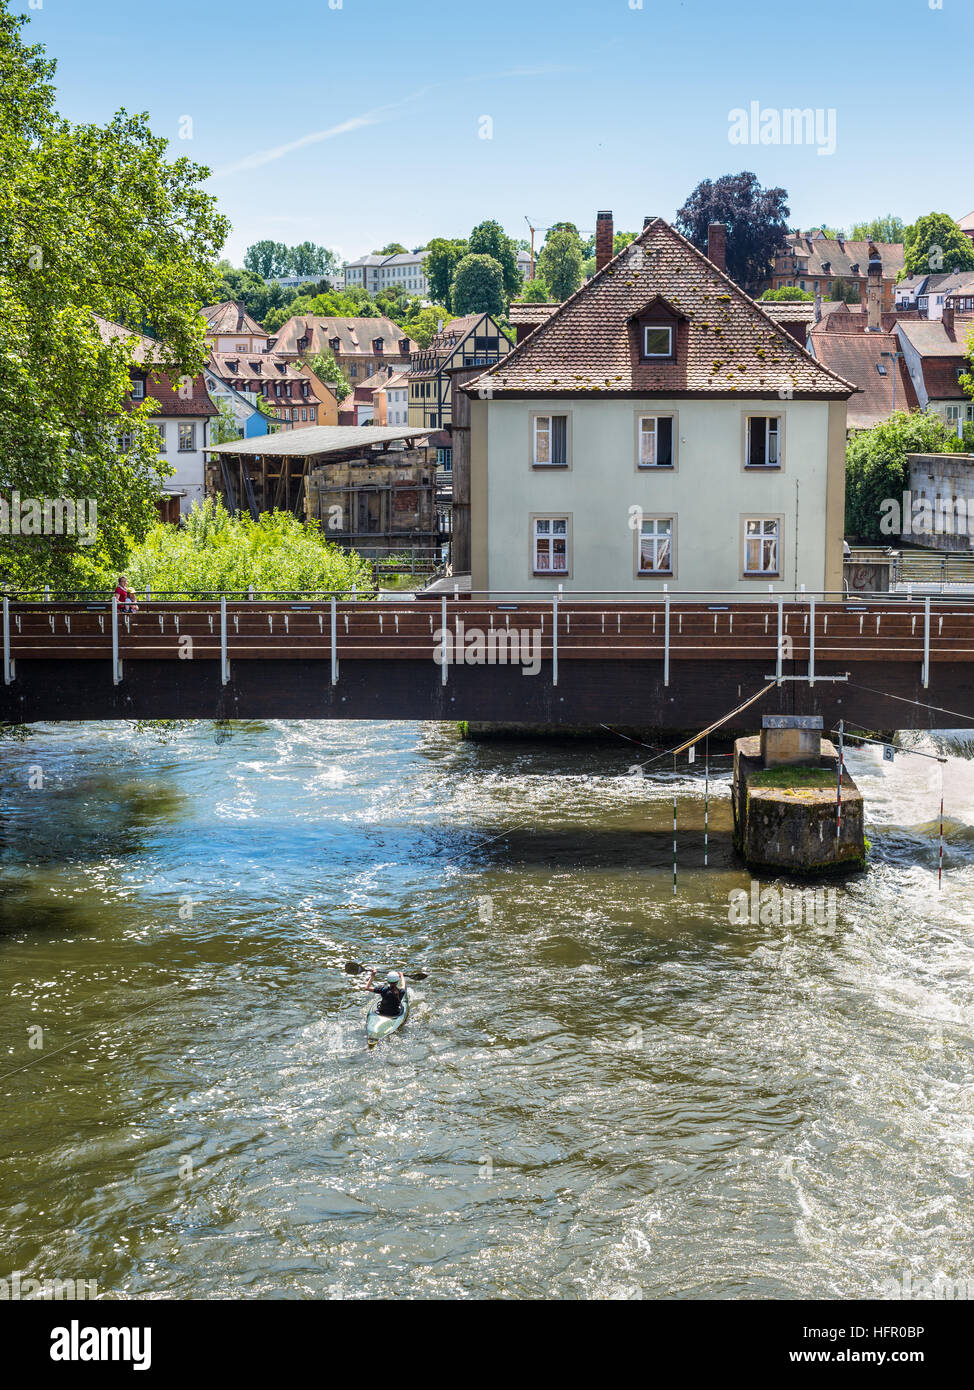 Kayakista sobre el río Regnitz contra el fondo del puente, y la arquitectura de la ciudad vieja de Bamberg Foto de stock